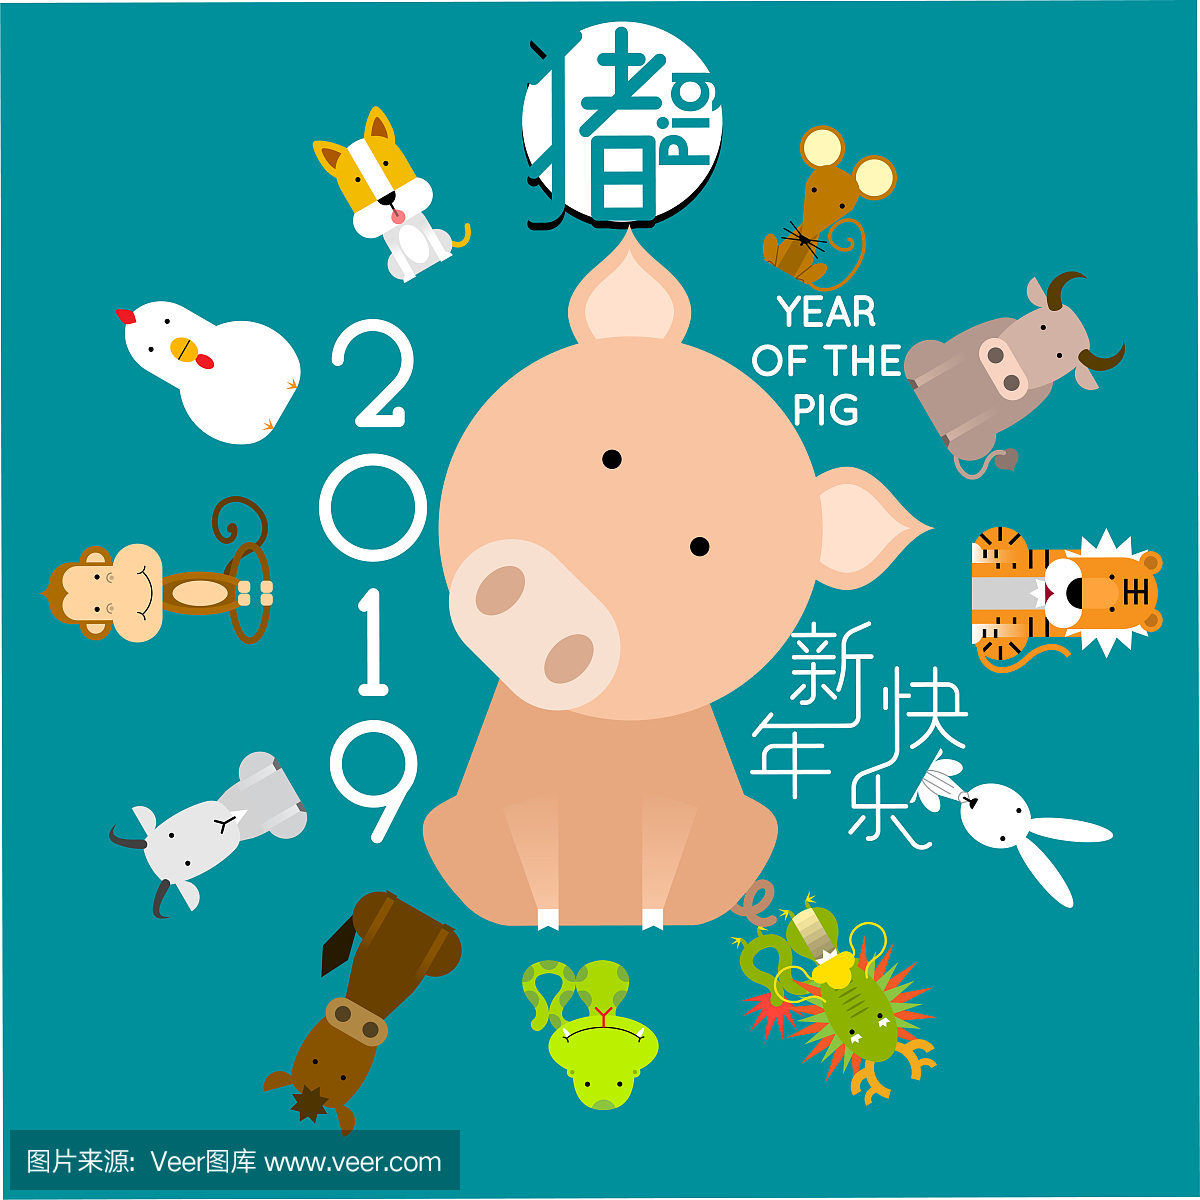 中国农历新年快乐2019年,有12只中国十二生肖